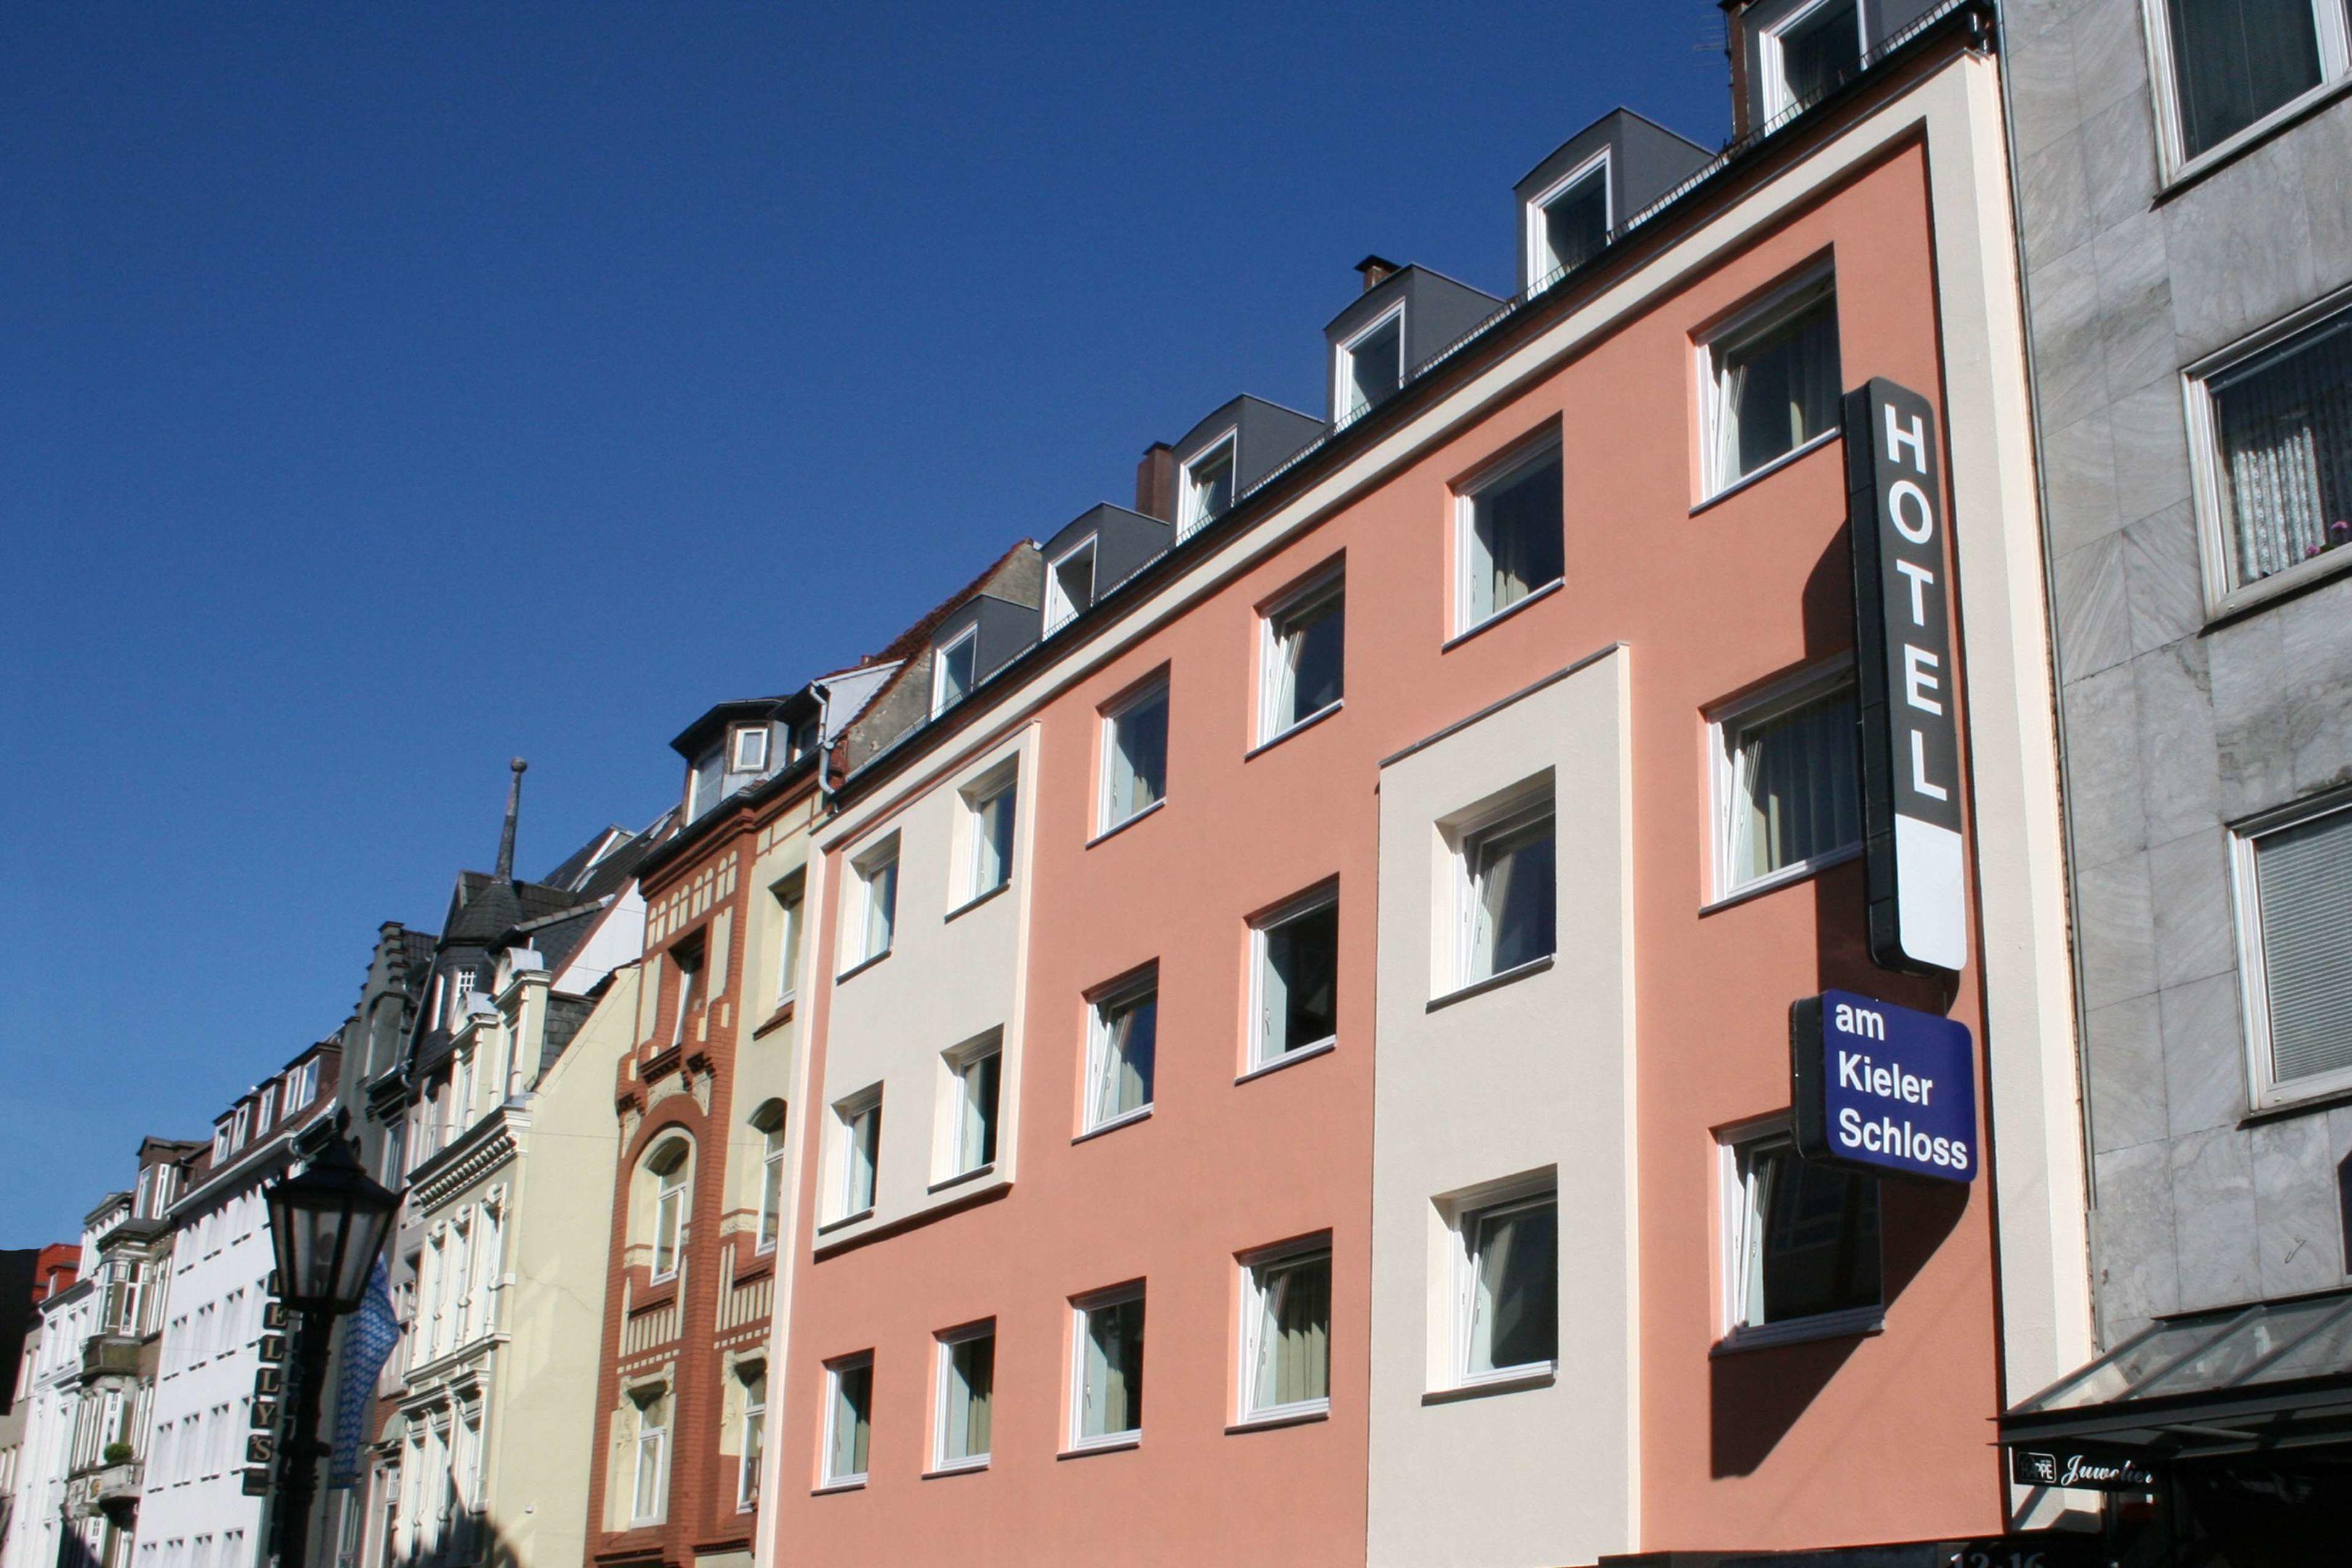 Hotel am Kieler Schloss by Premiere Classe